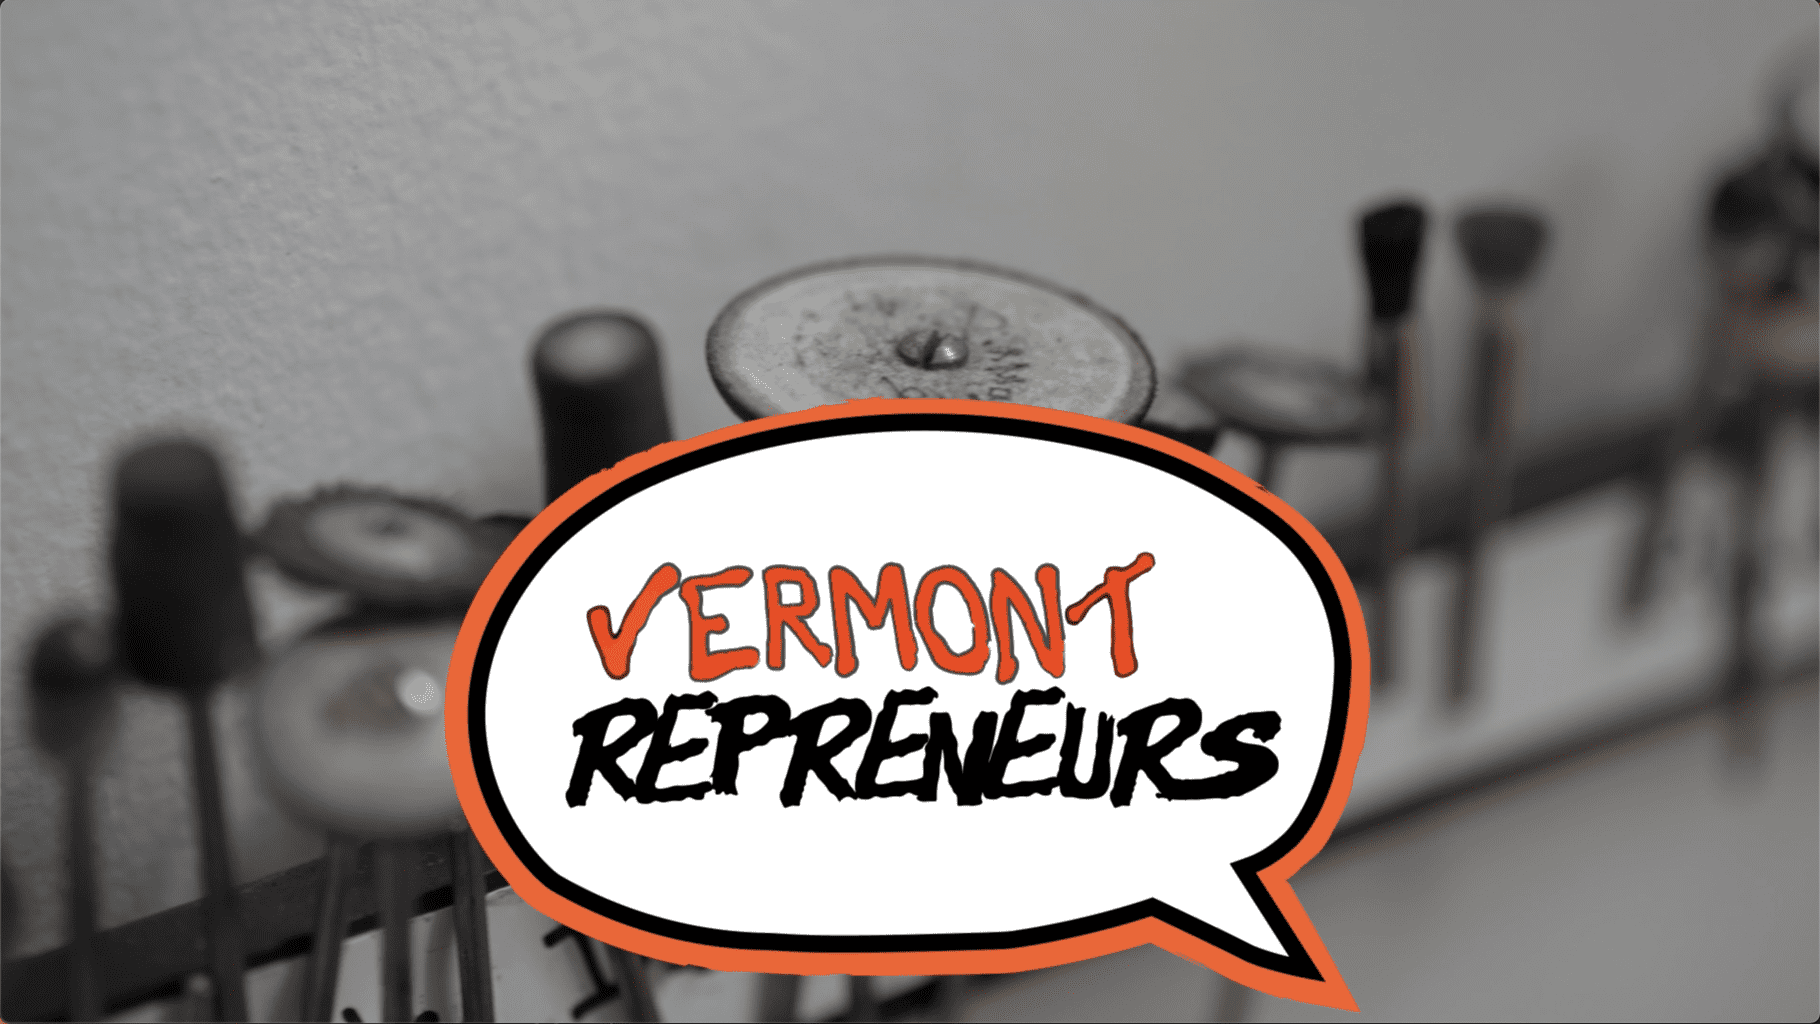 Vermontrepreneurs